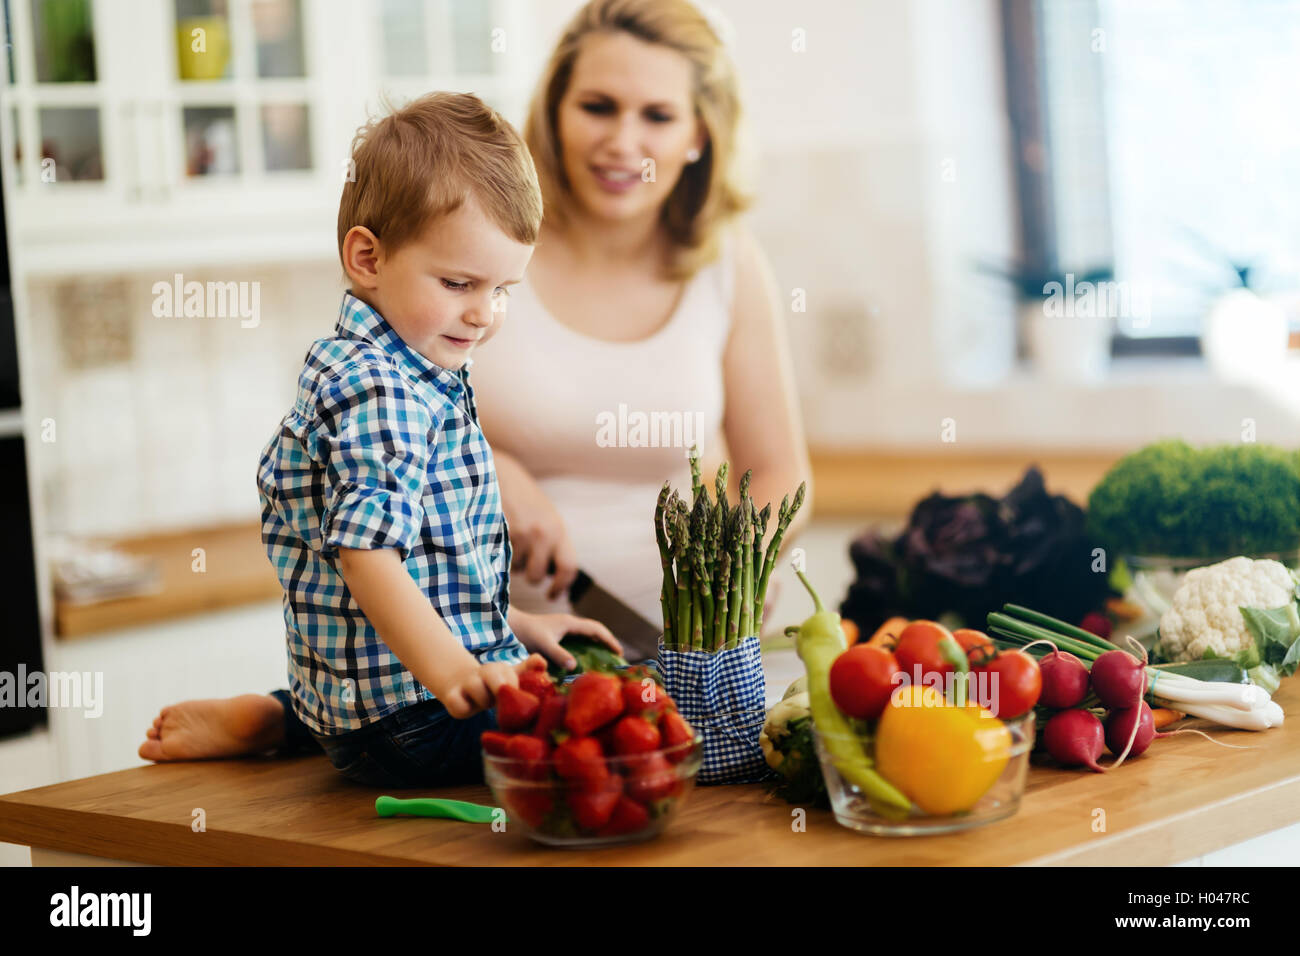 La madre e il bambino a preparare il pranzo da verdure fresche Foto Stock